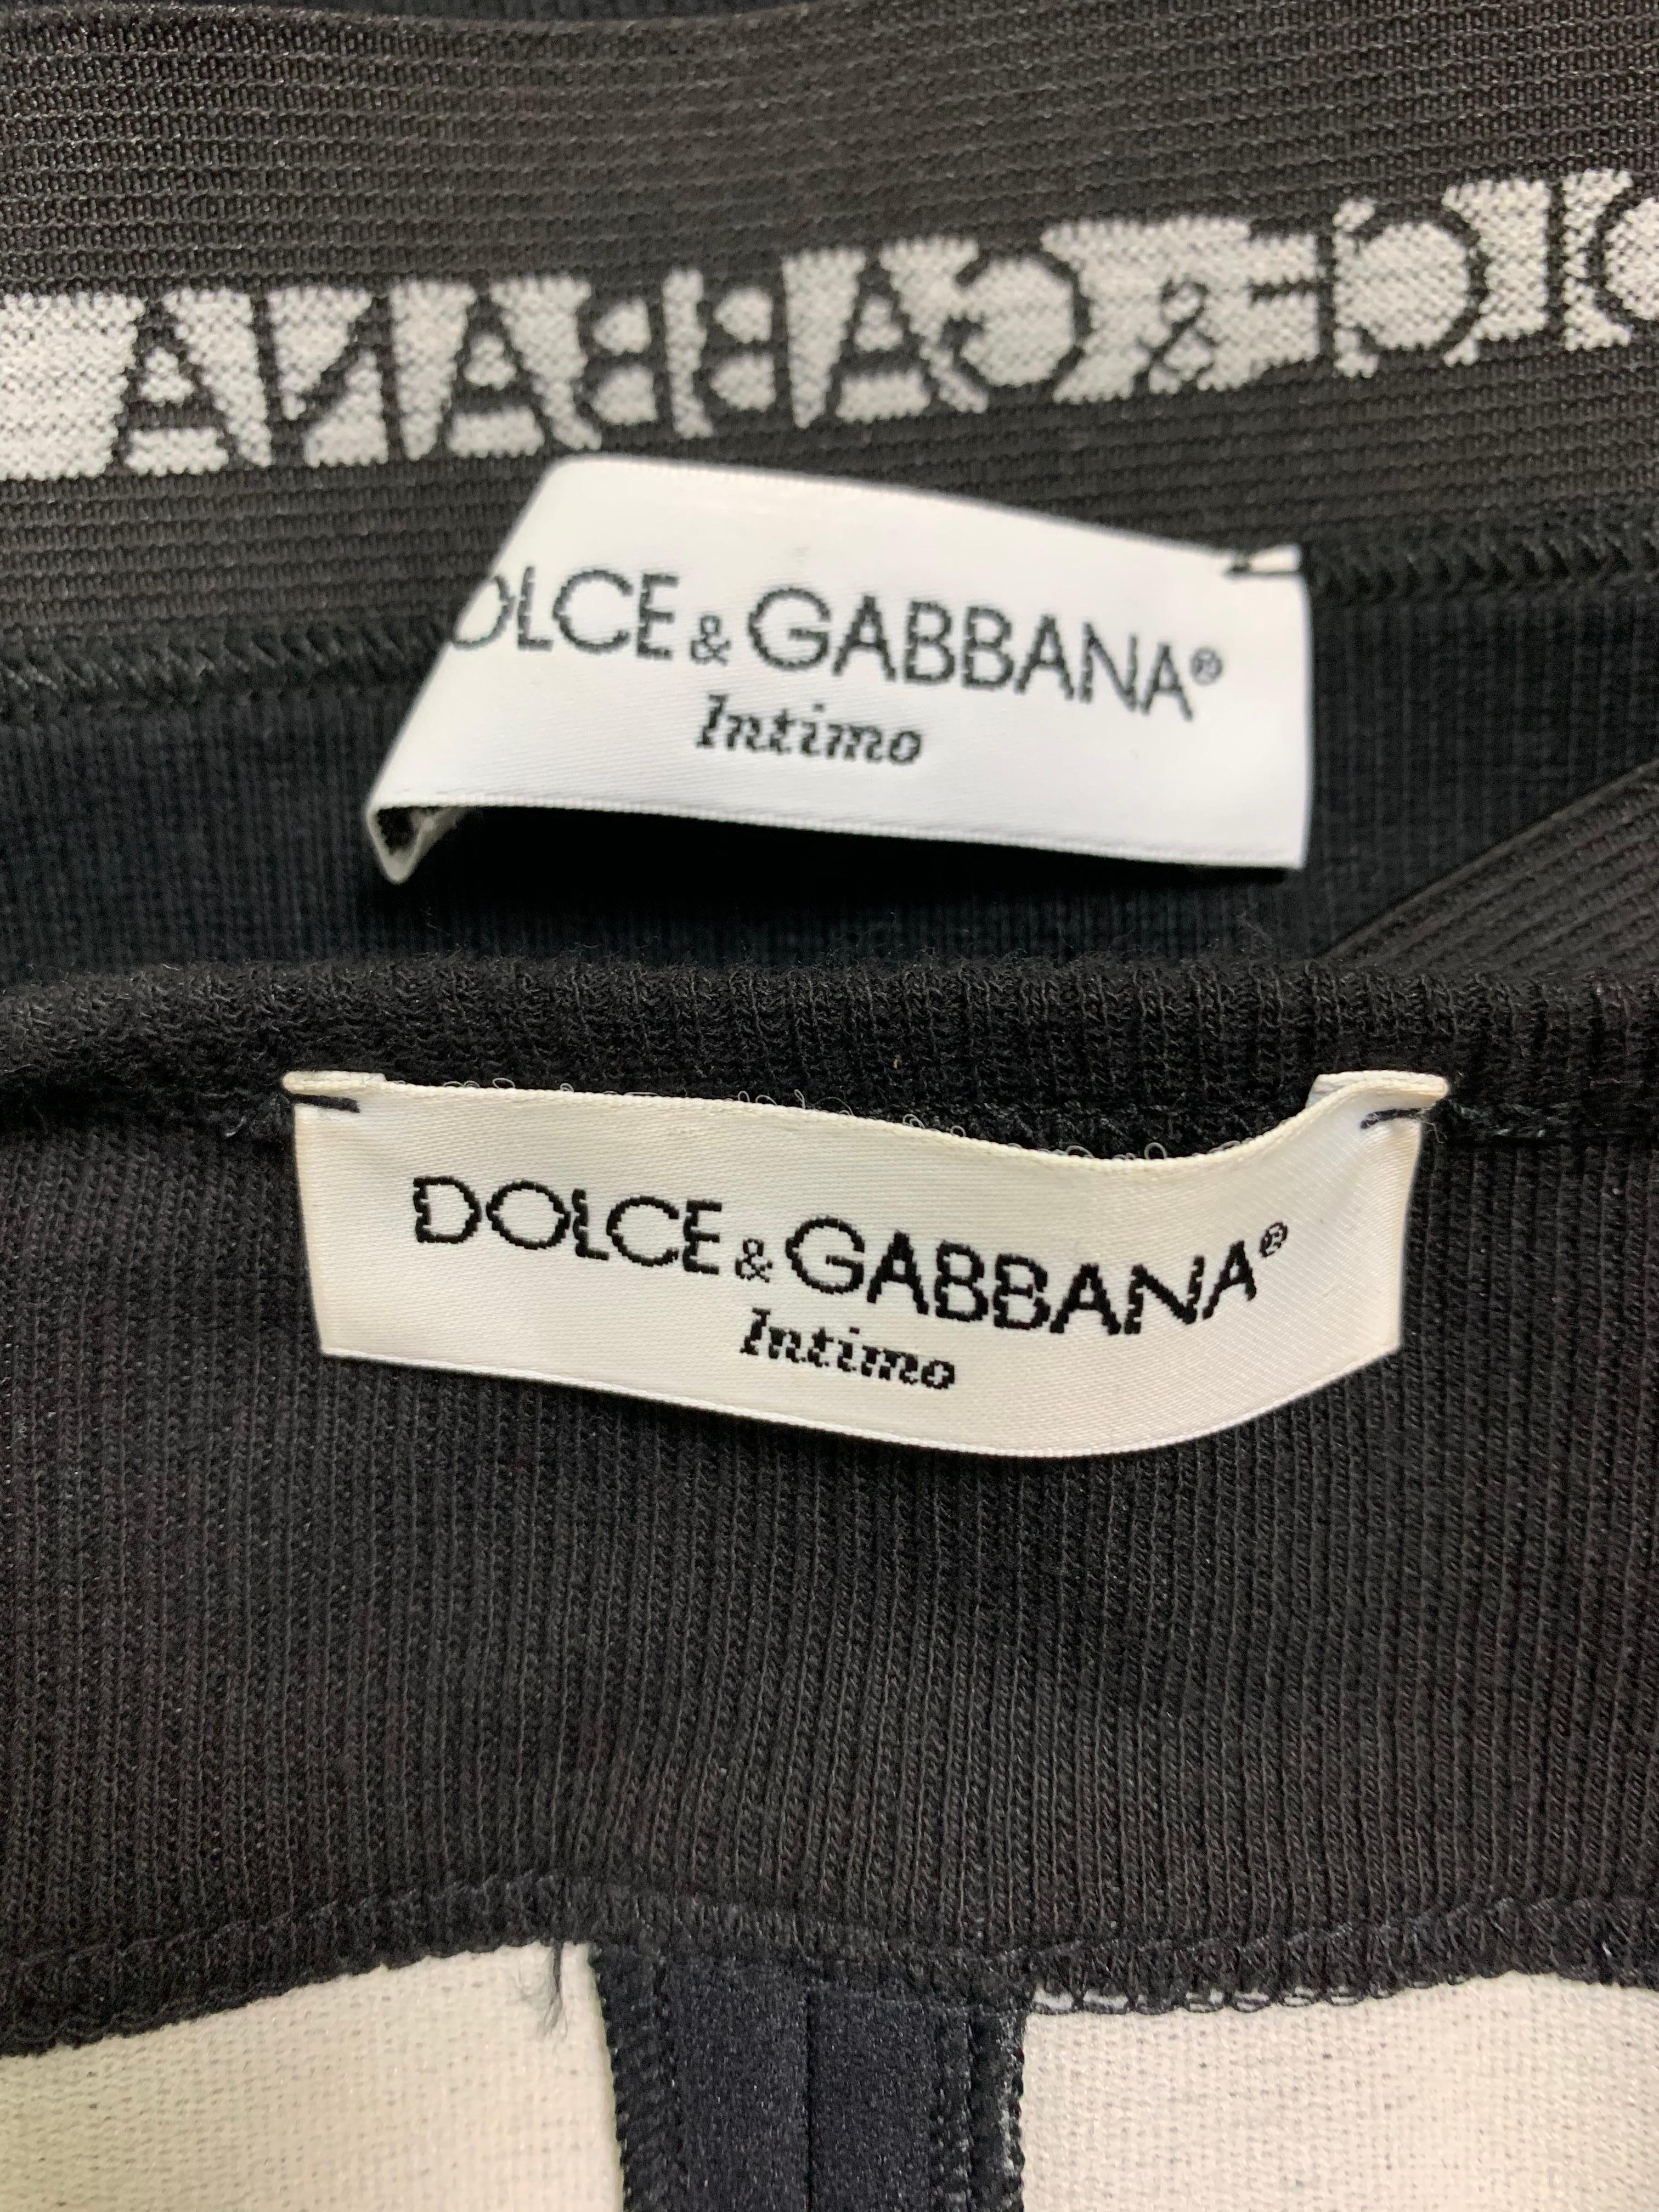 dolce and gabbana underwear set